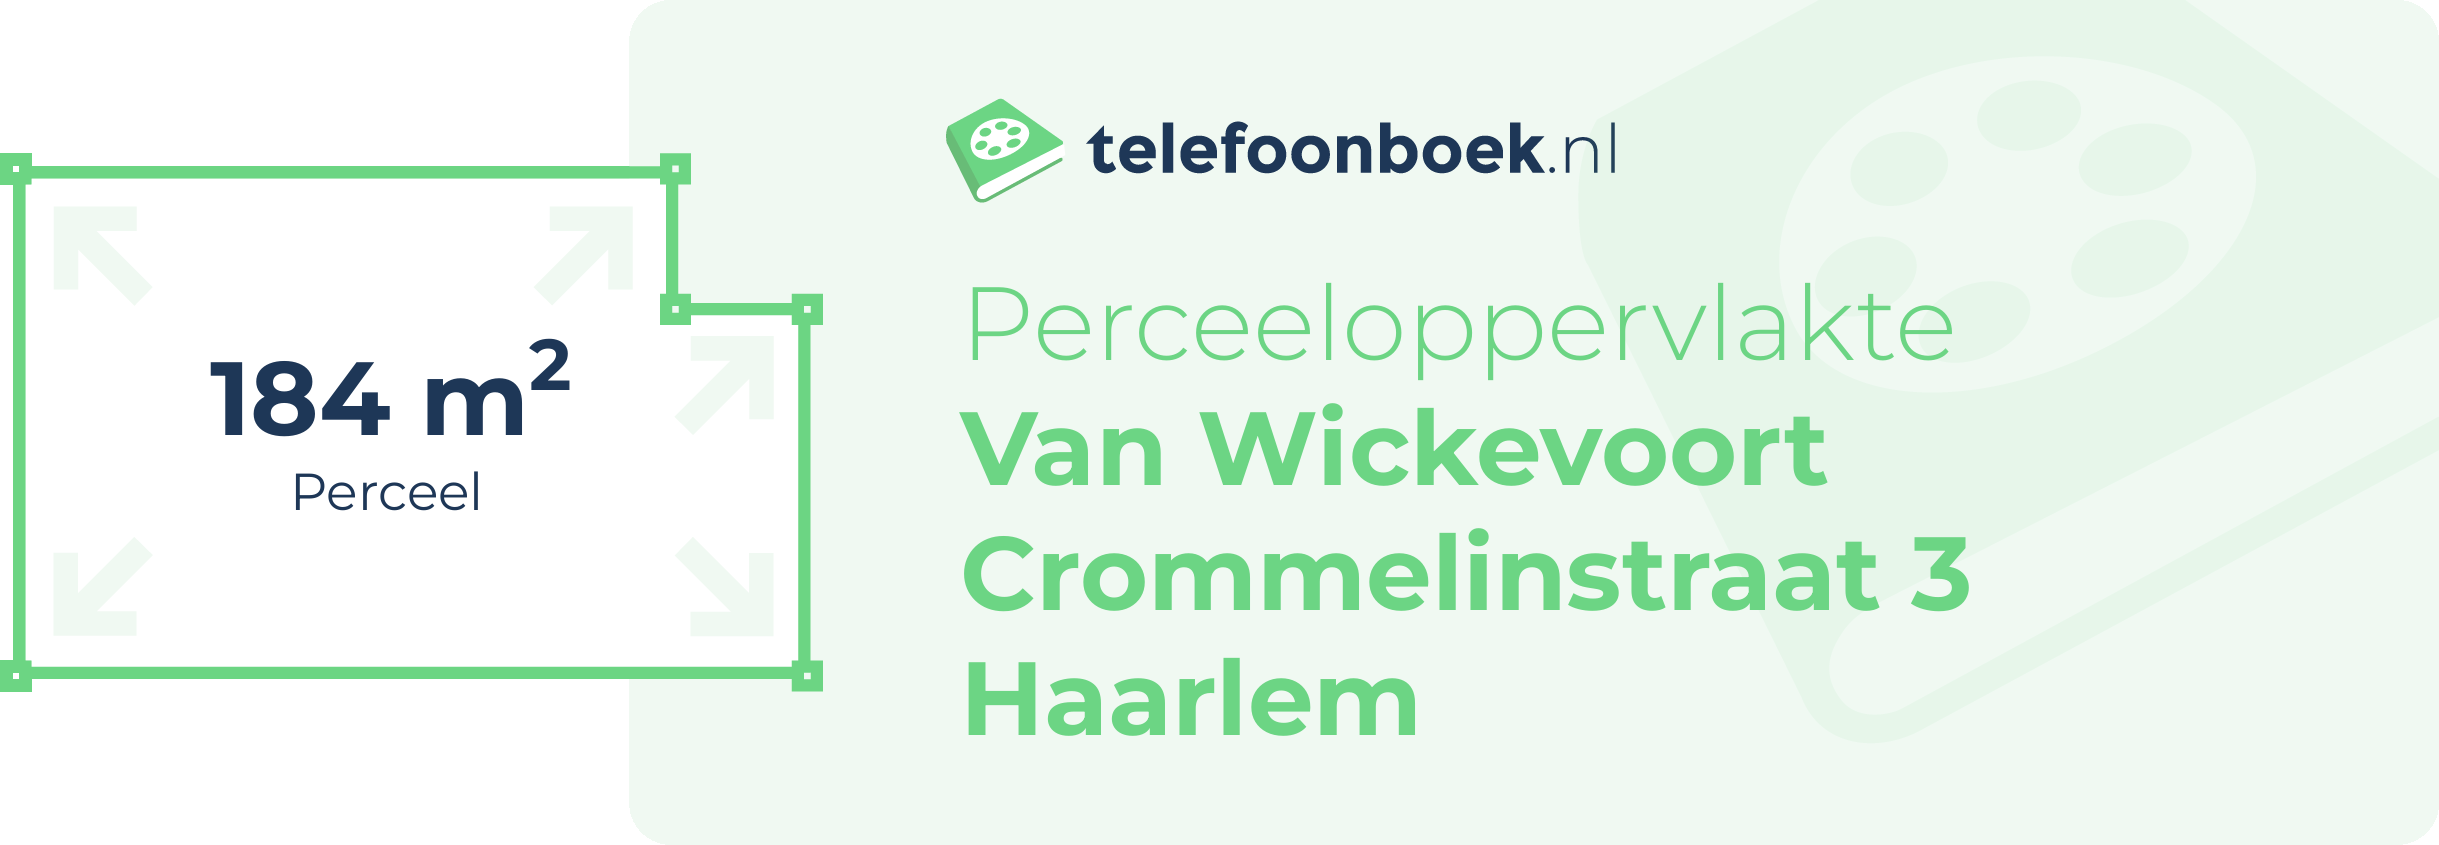 Perceeloppervlakte Van Wickevoort Crommelinstraat 3 Haarlem